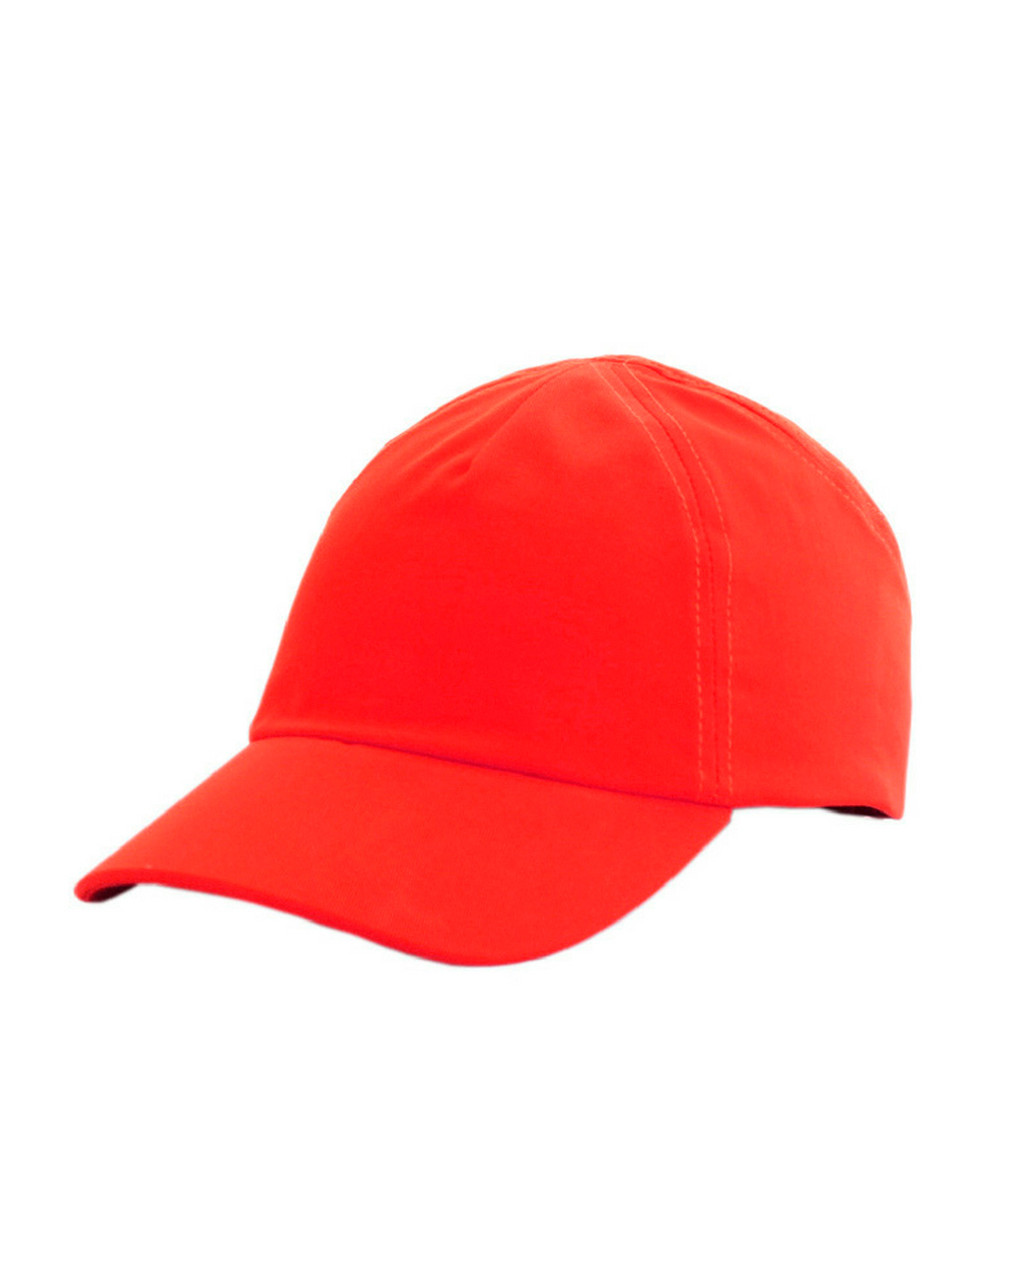 Каскетка РОСОМЗ RZ FavoriT CAP красная, 95516